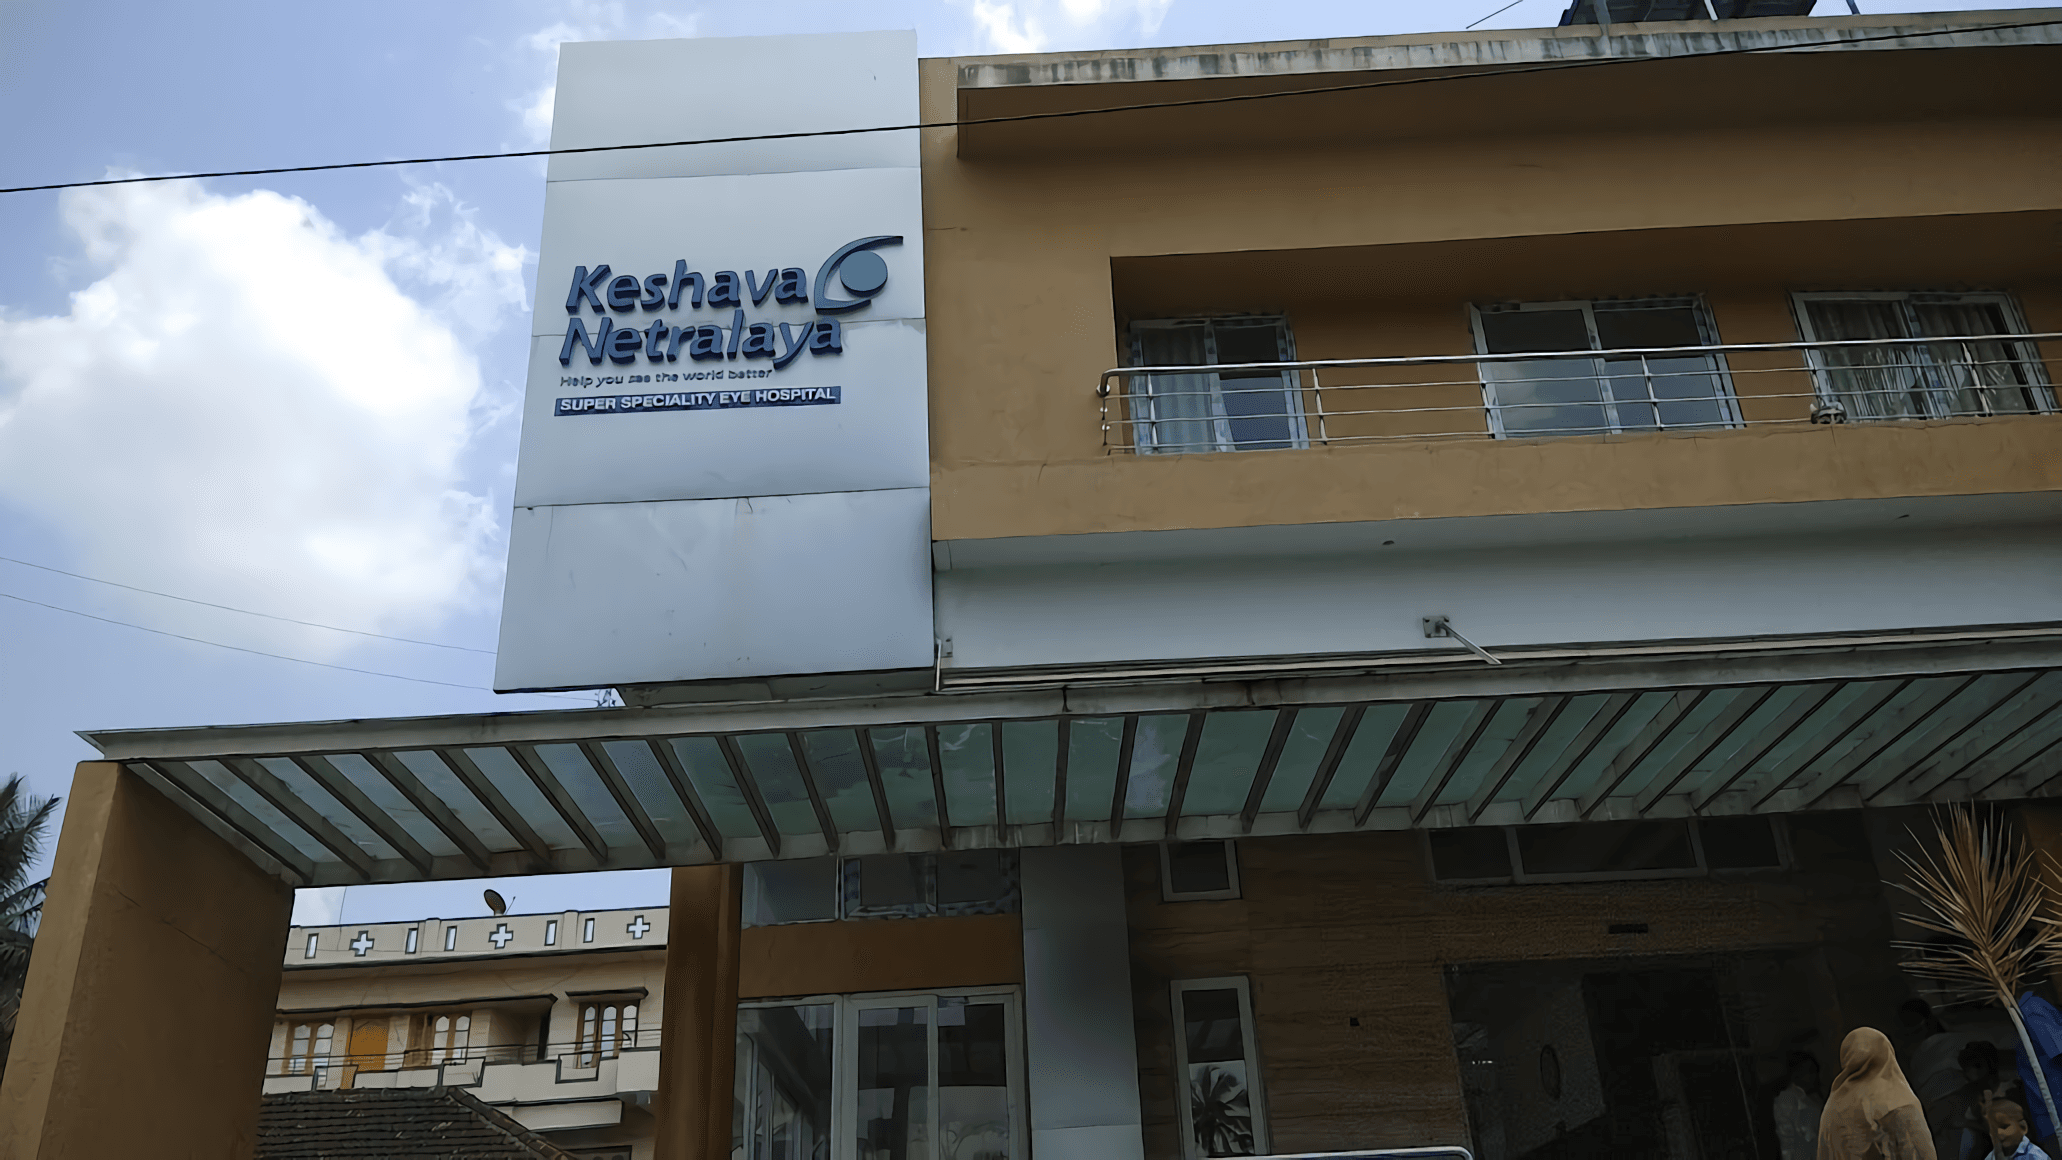 Keshava Netralaya